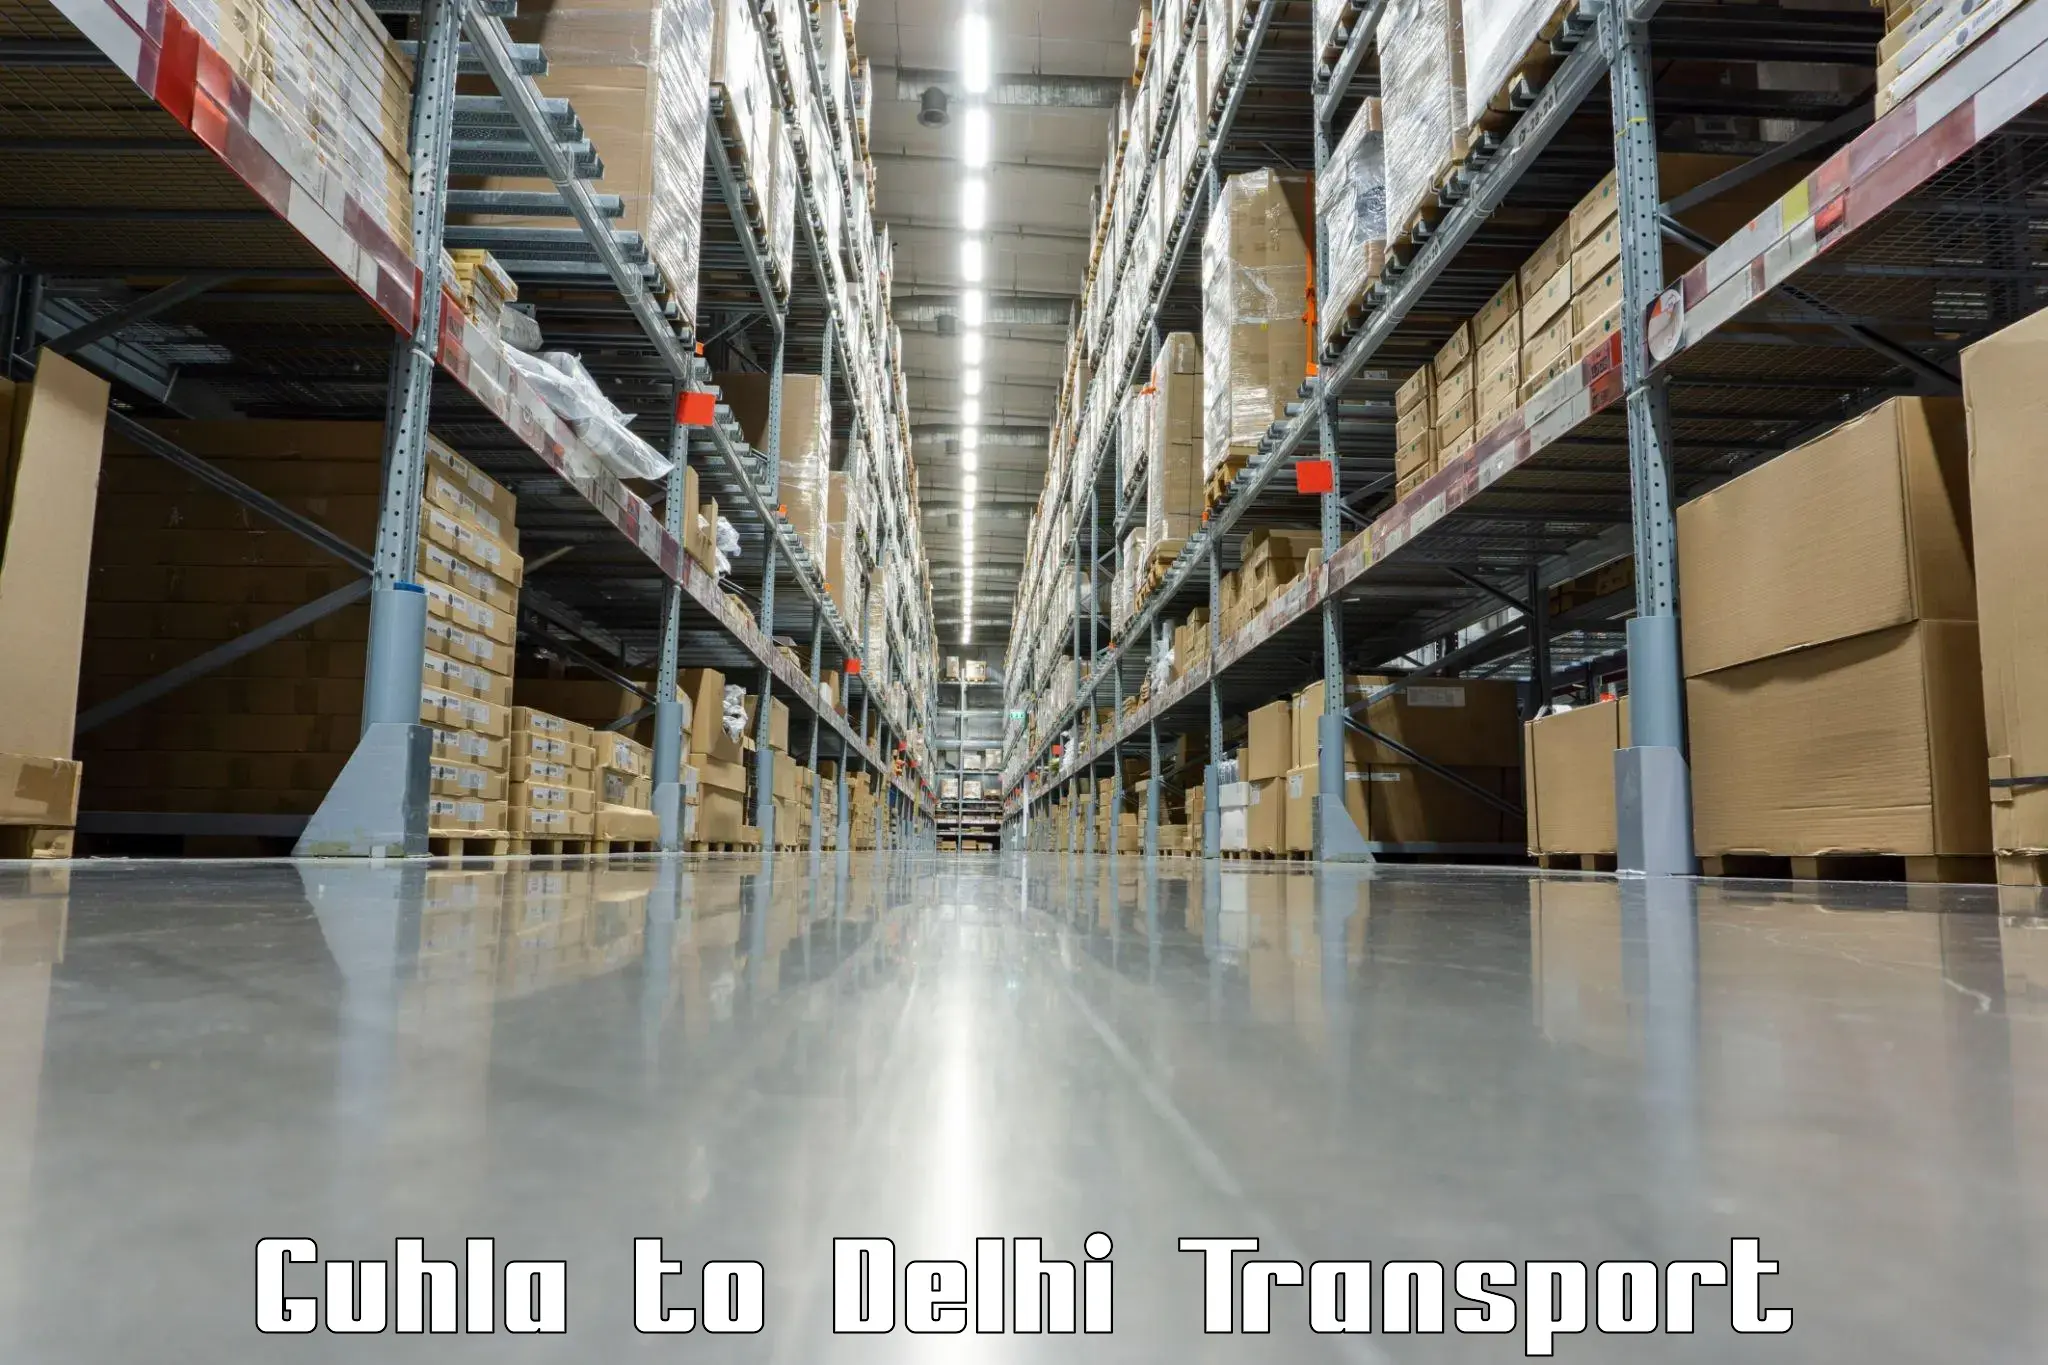 Daily transport service Guhla to IIT Delhi